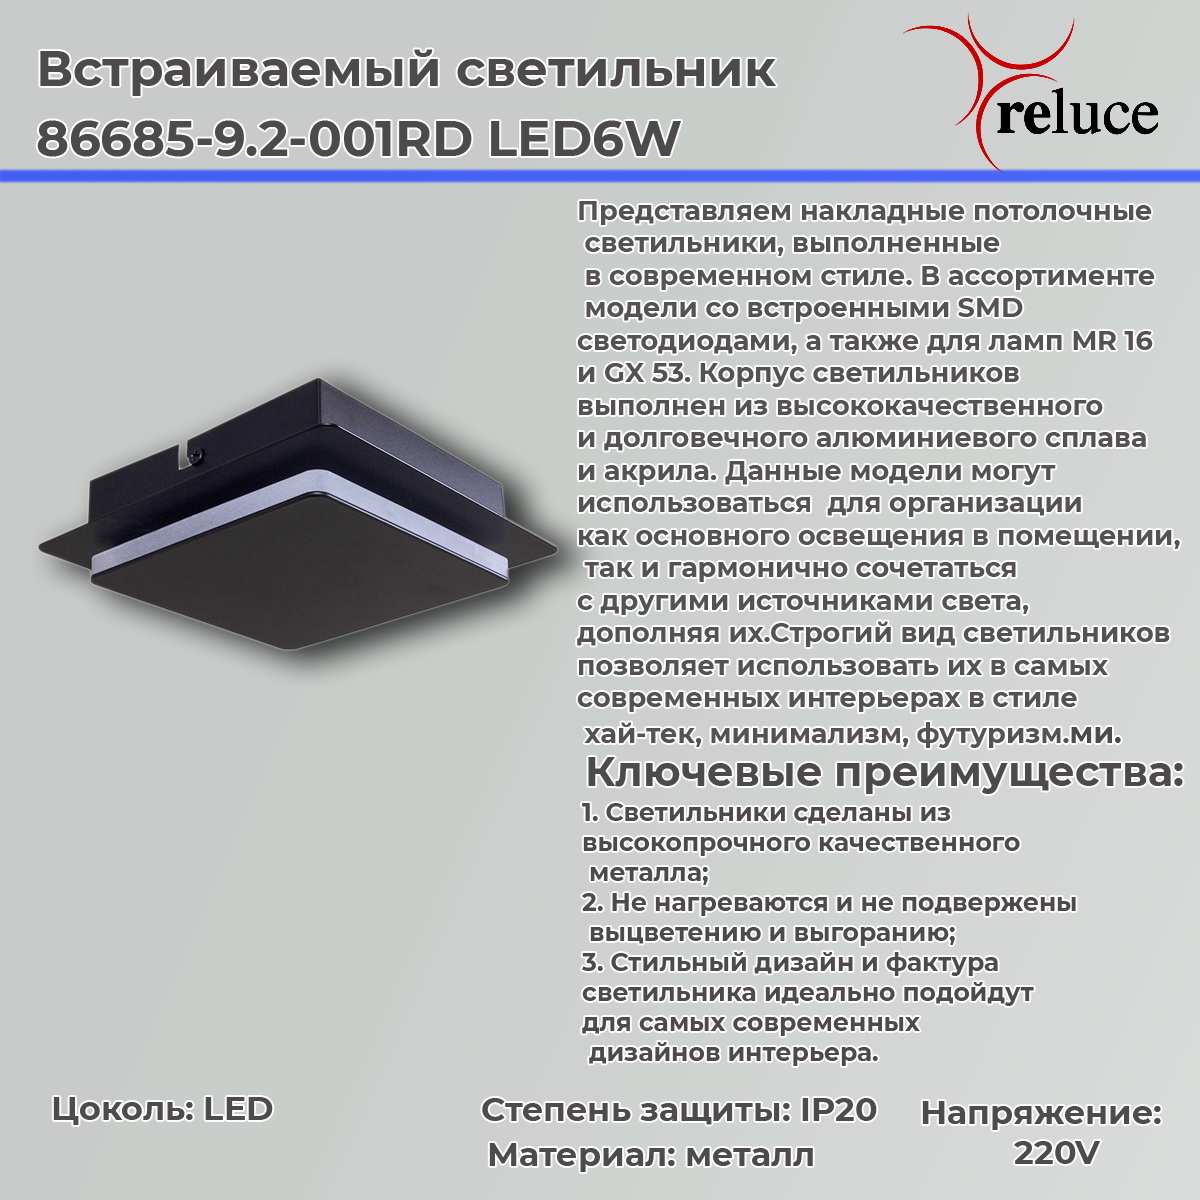 Настенно-потолочный светильник Reluce 86685-9.2-001RD LED6W BK